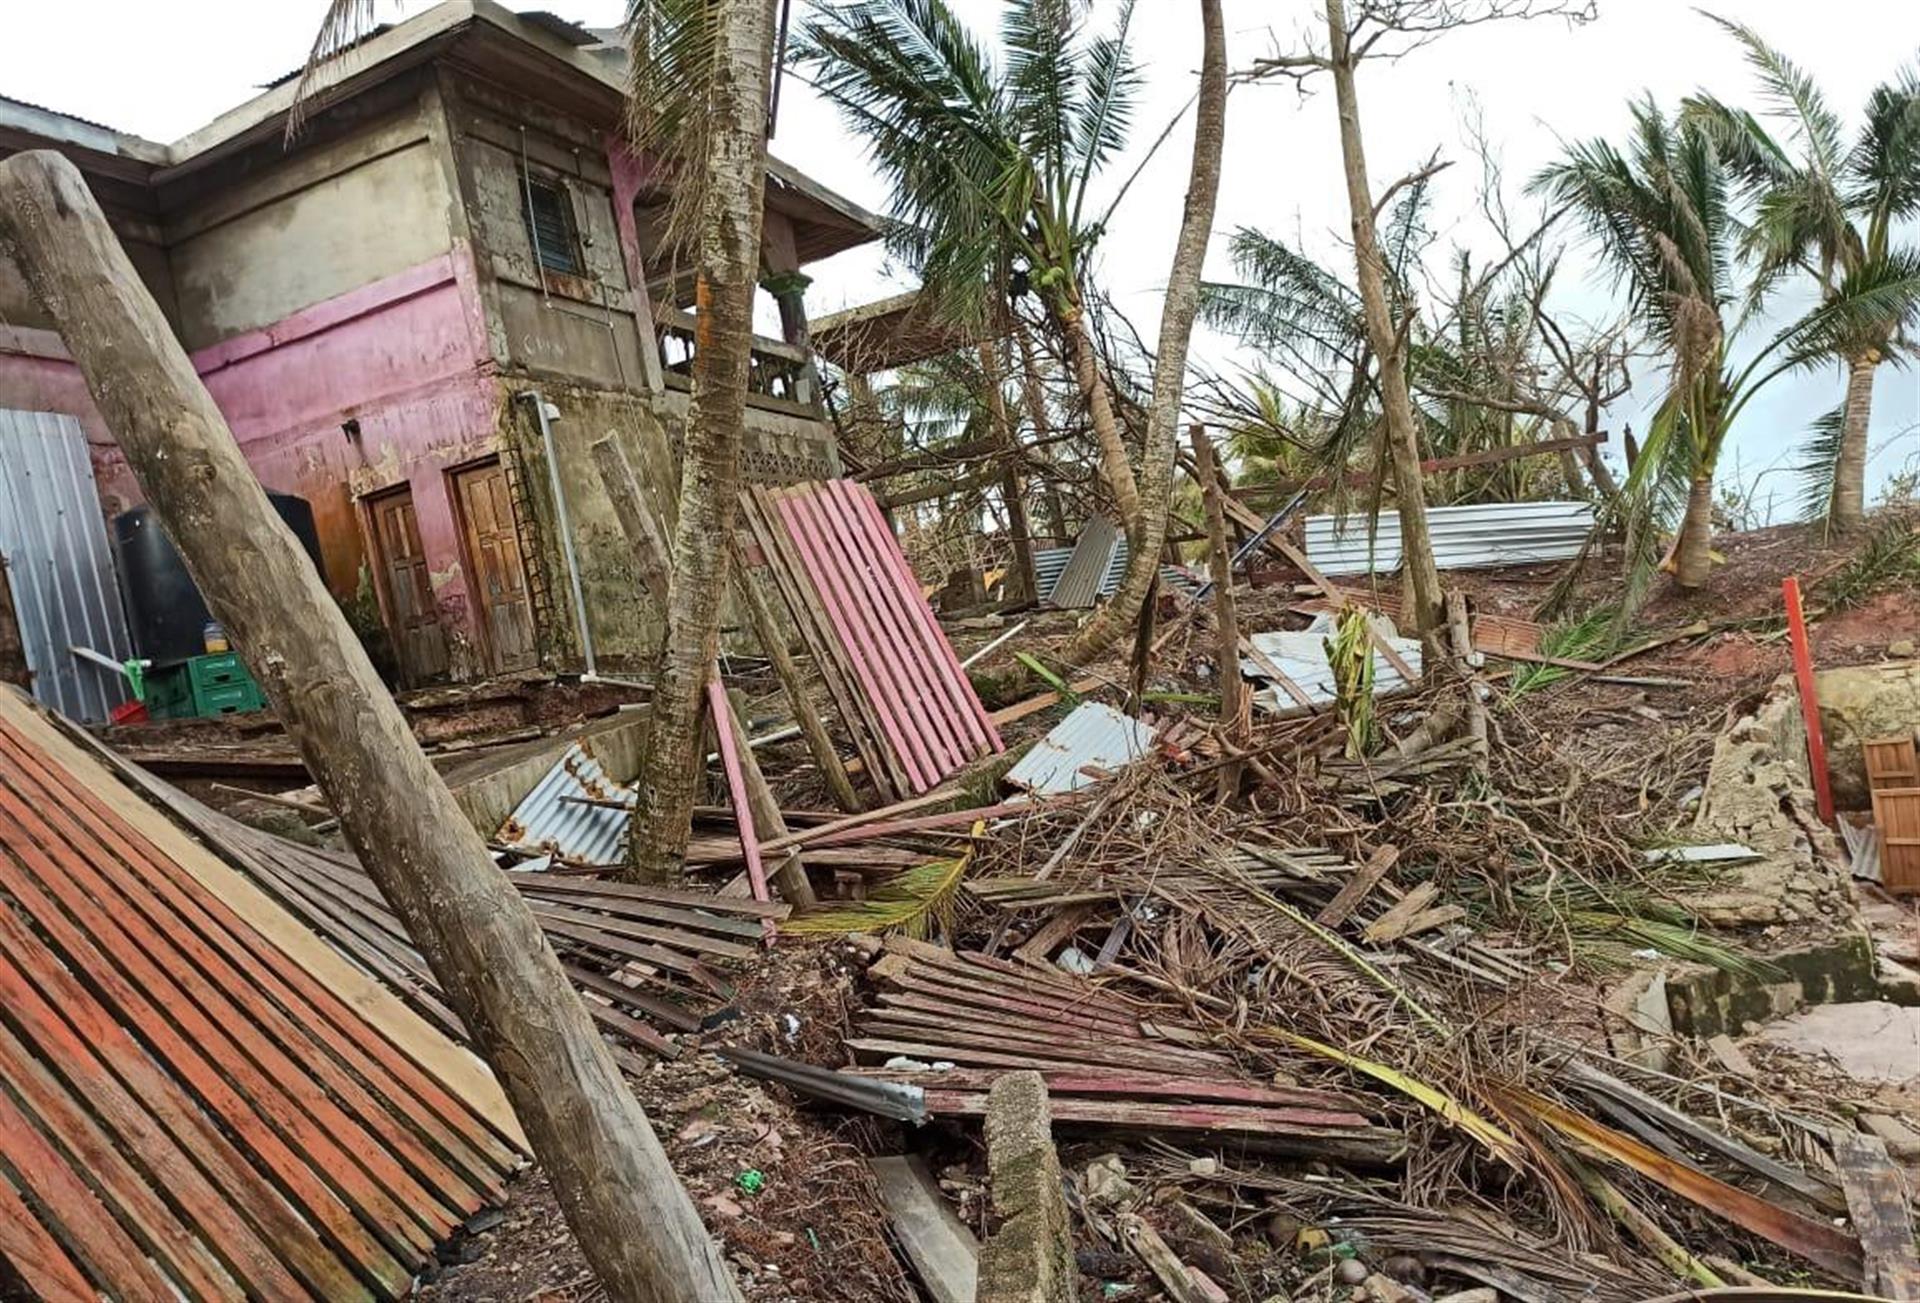 desastres huracan eta e iota en nicaragua